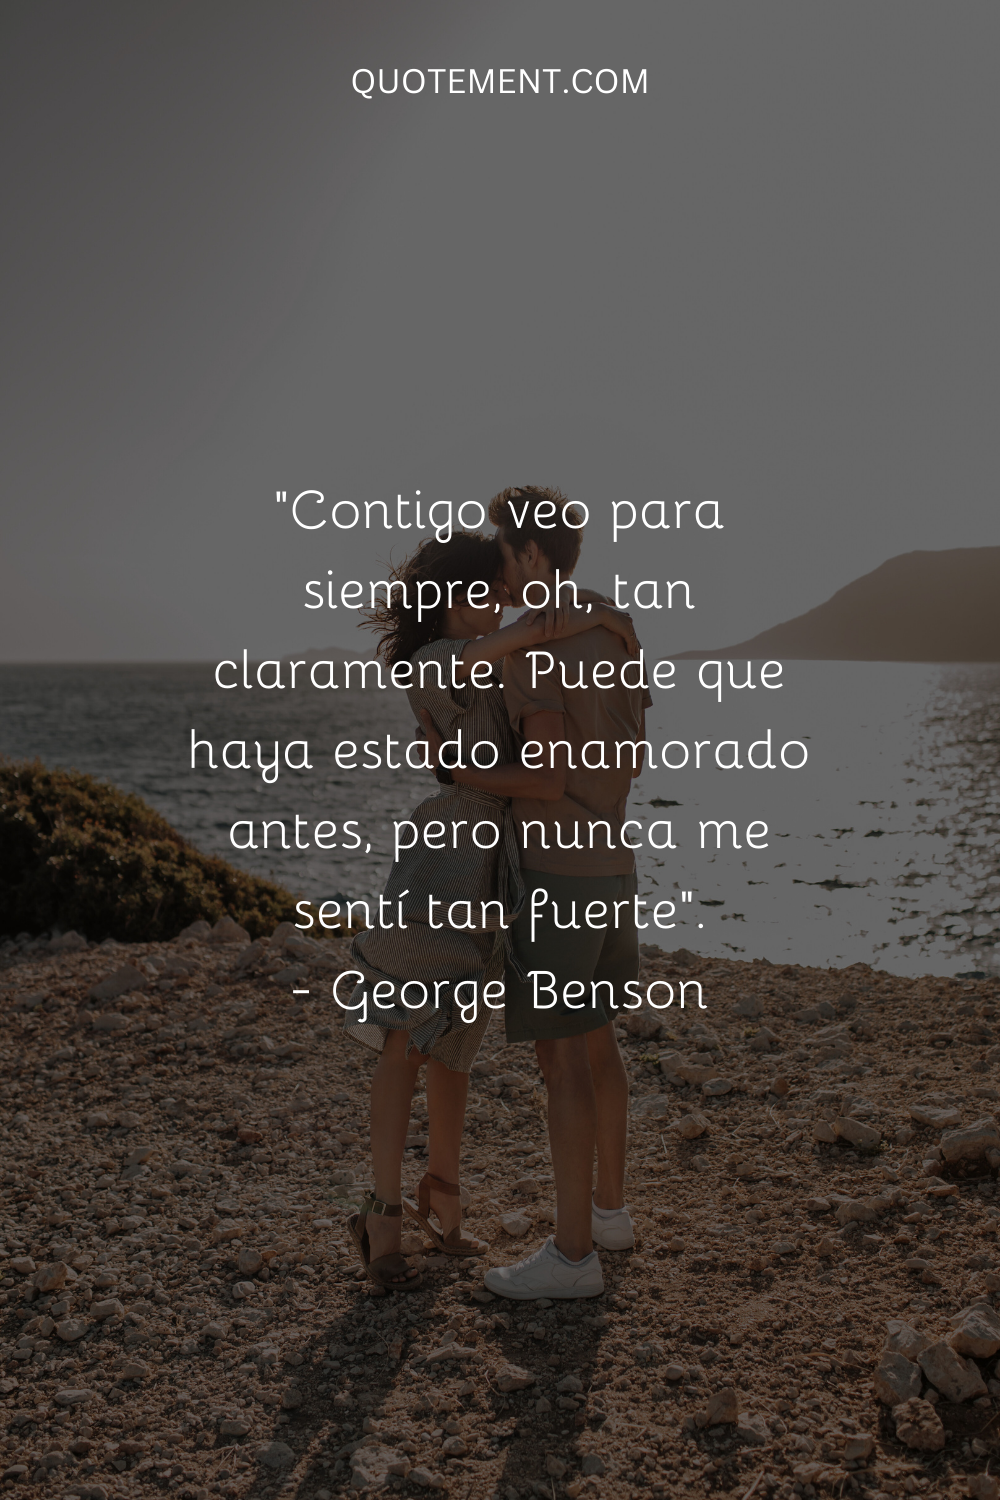 "Contigo veo para siempre, oh, tan claramente. Puede que haya estado enamorado antes, pero nunca me sentí tan fuerte". - George Benson